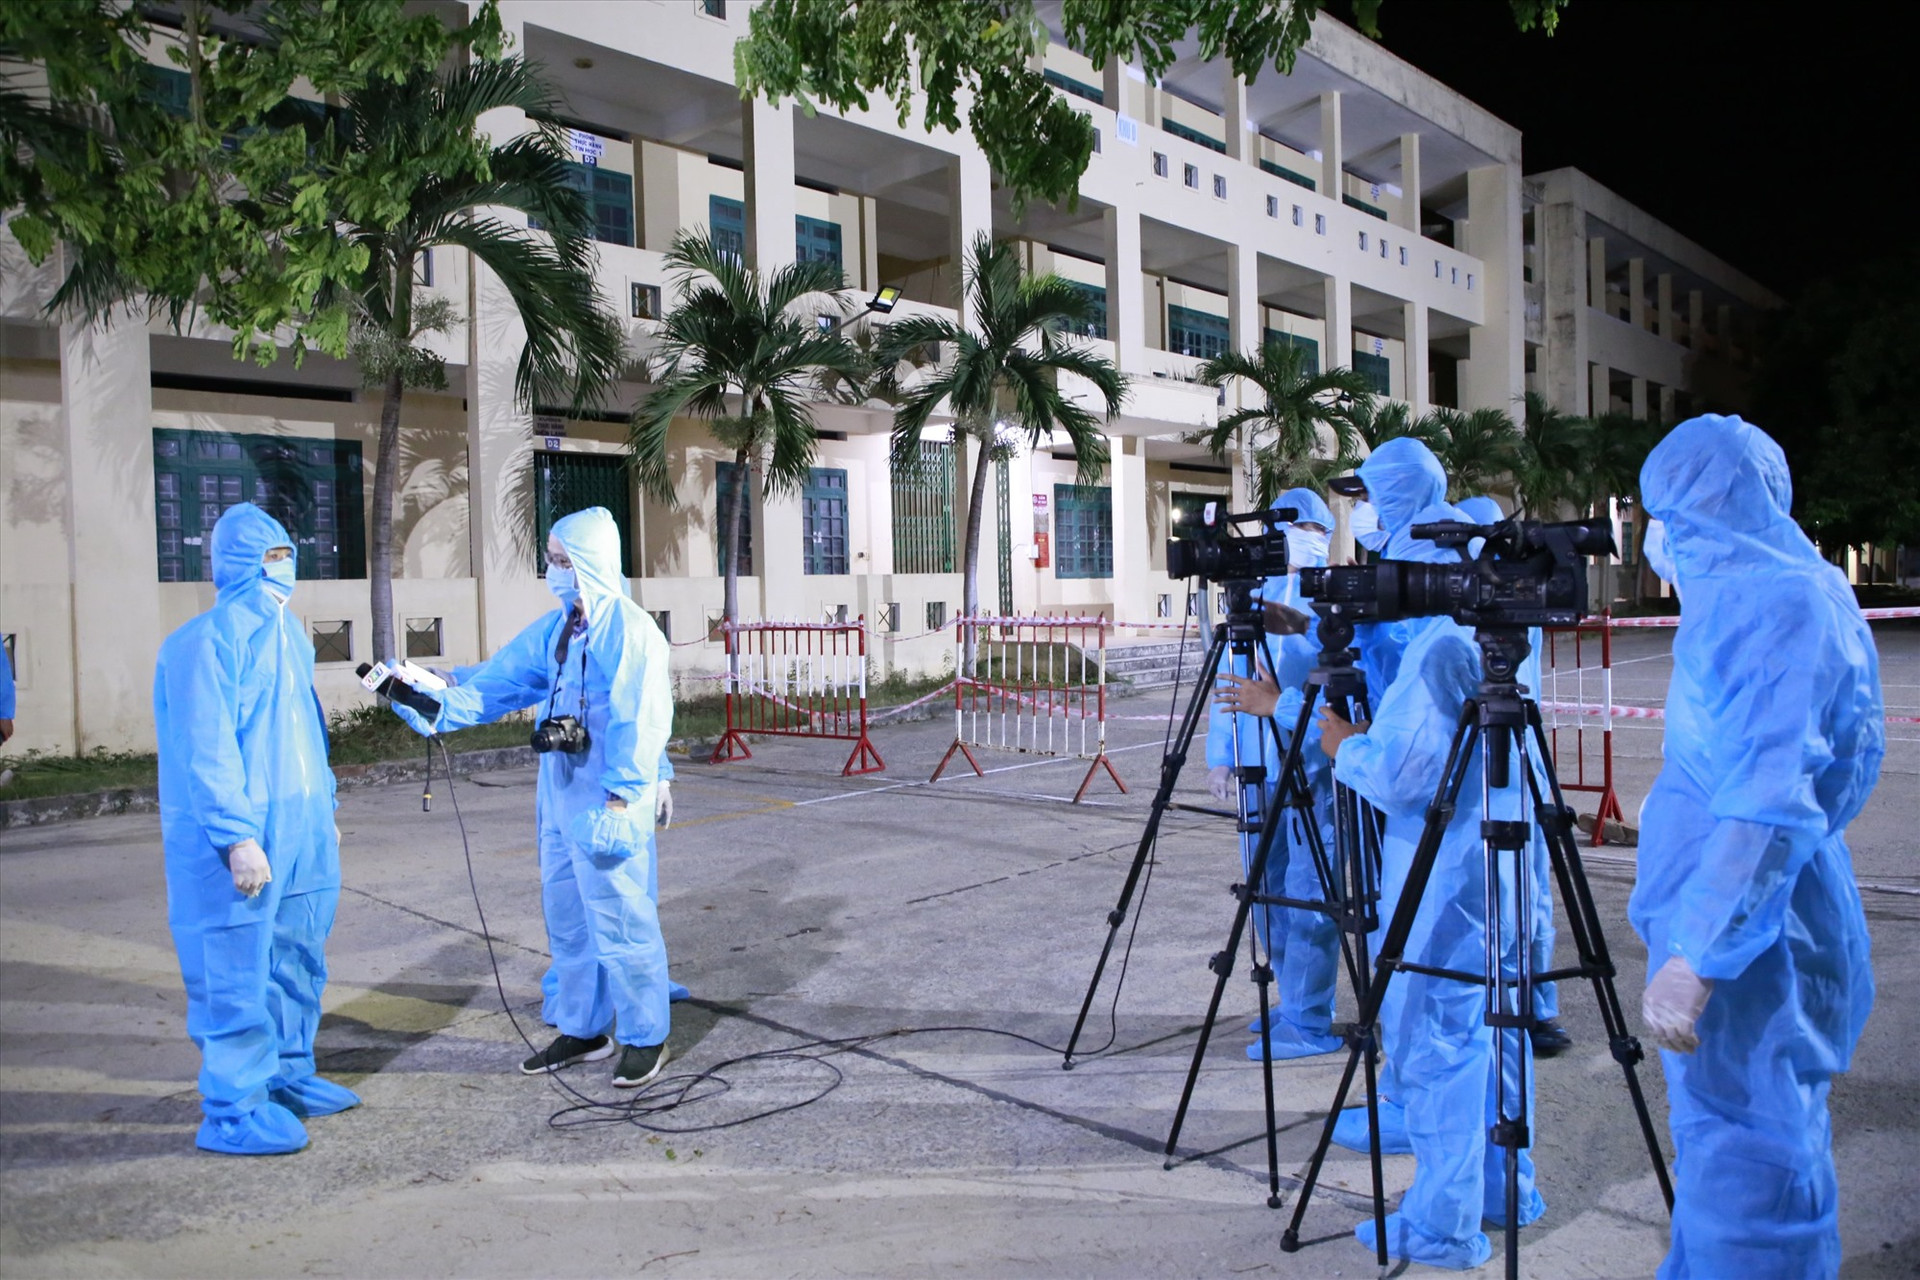 Đội ngũ người làm phát thanh - truyền hình tại Đài PT-TH Quảng Nam đã lăn lộn, bám sát thực tiễn, phản ánh sinh động đời sống trên sóng phát thanh - truyền hình Ảnh: T.C